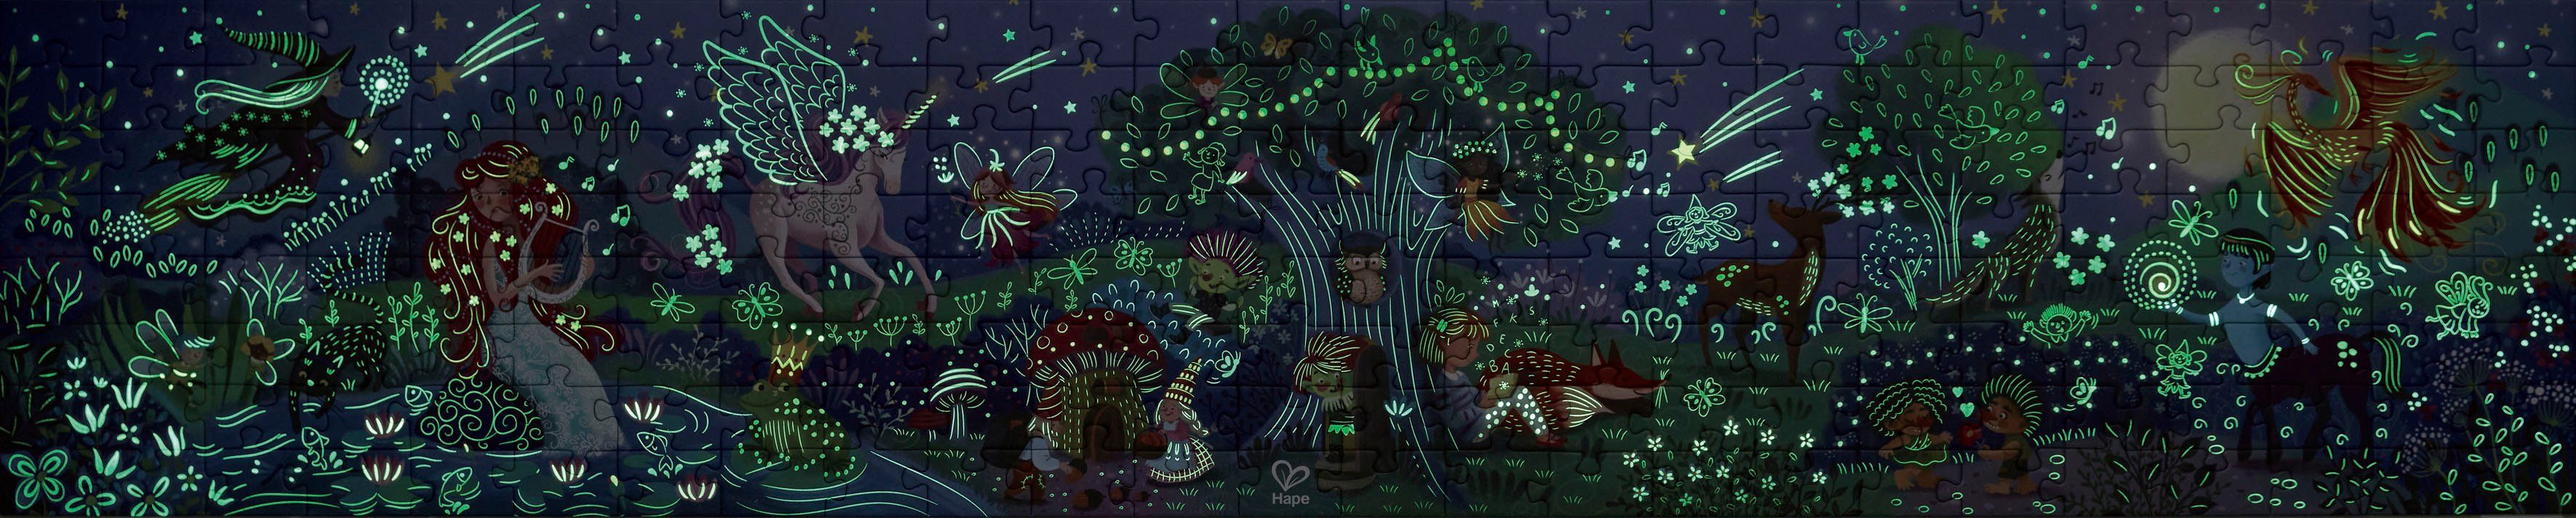 Dunkeln der im Puzzle Wunder, 200 Wald Puzzleteile, leuchtet Hape